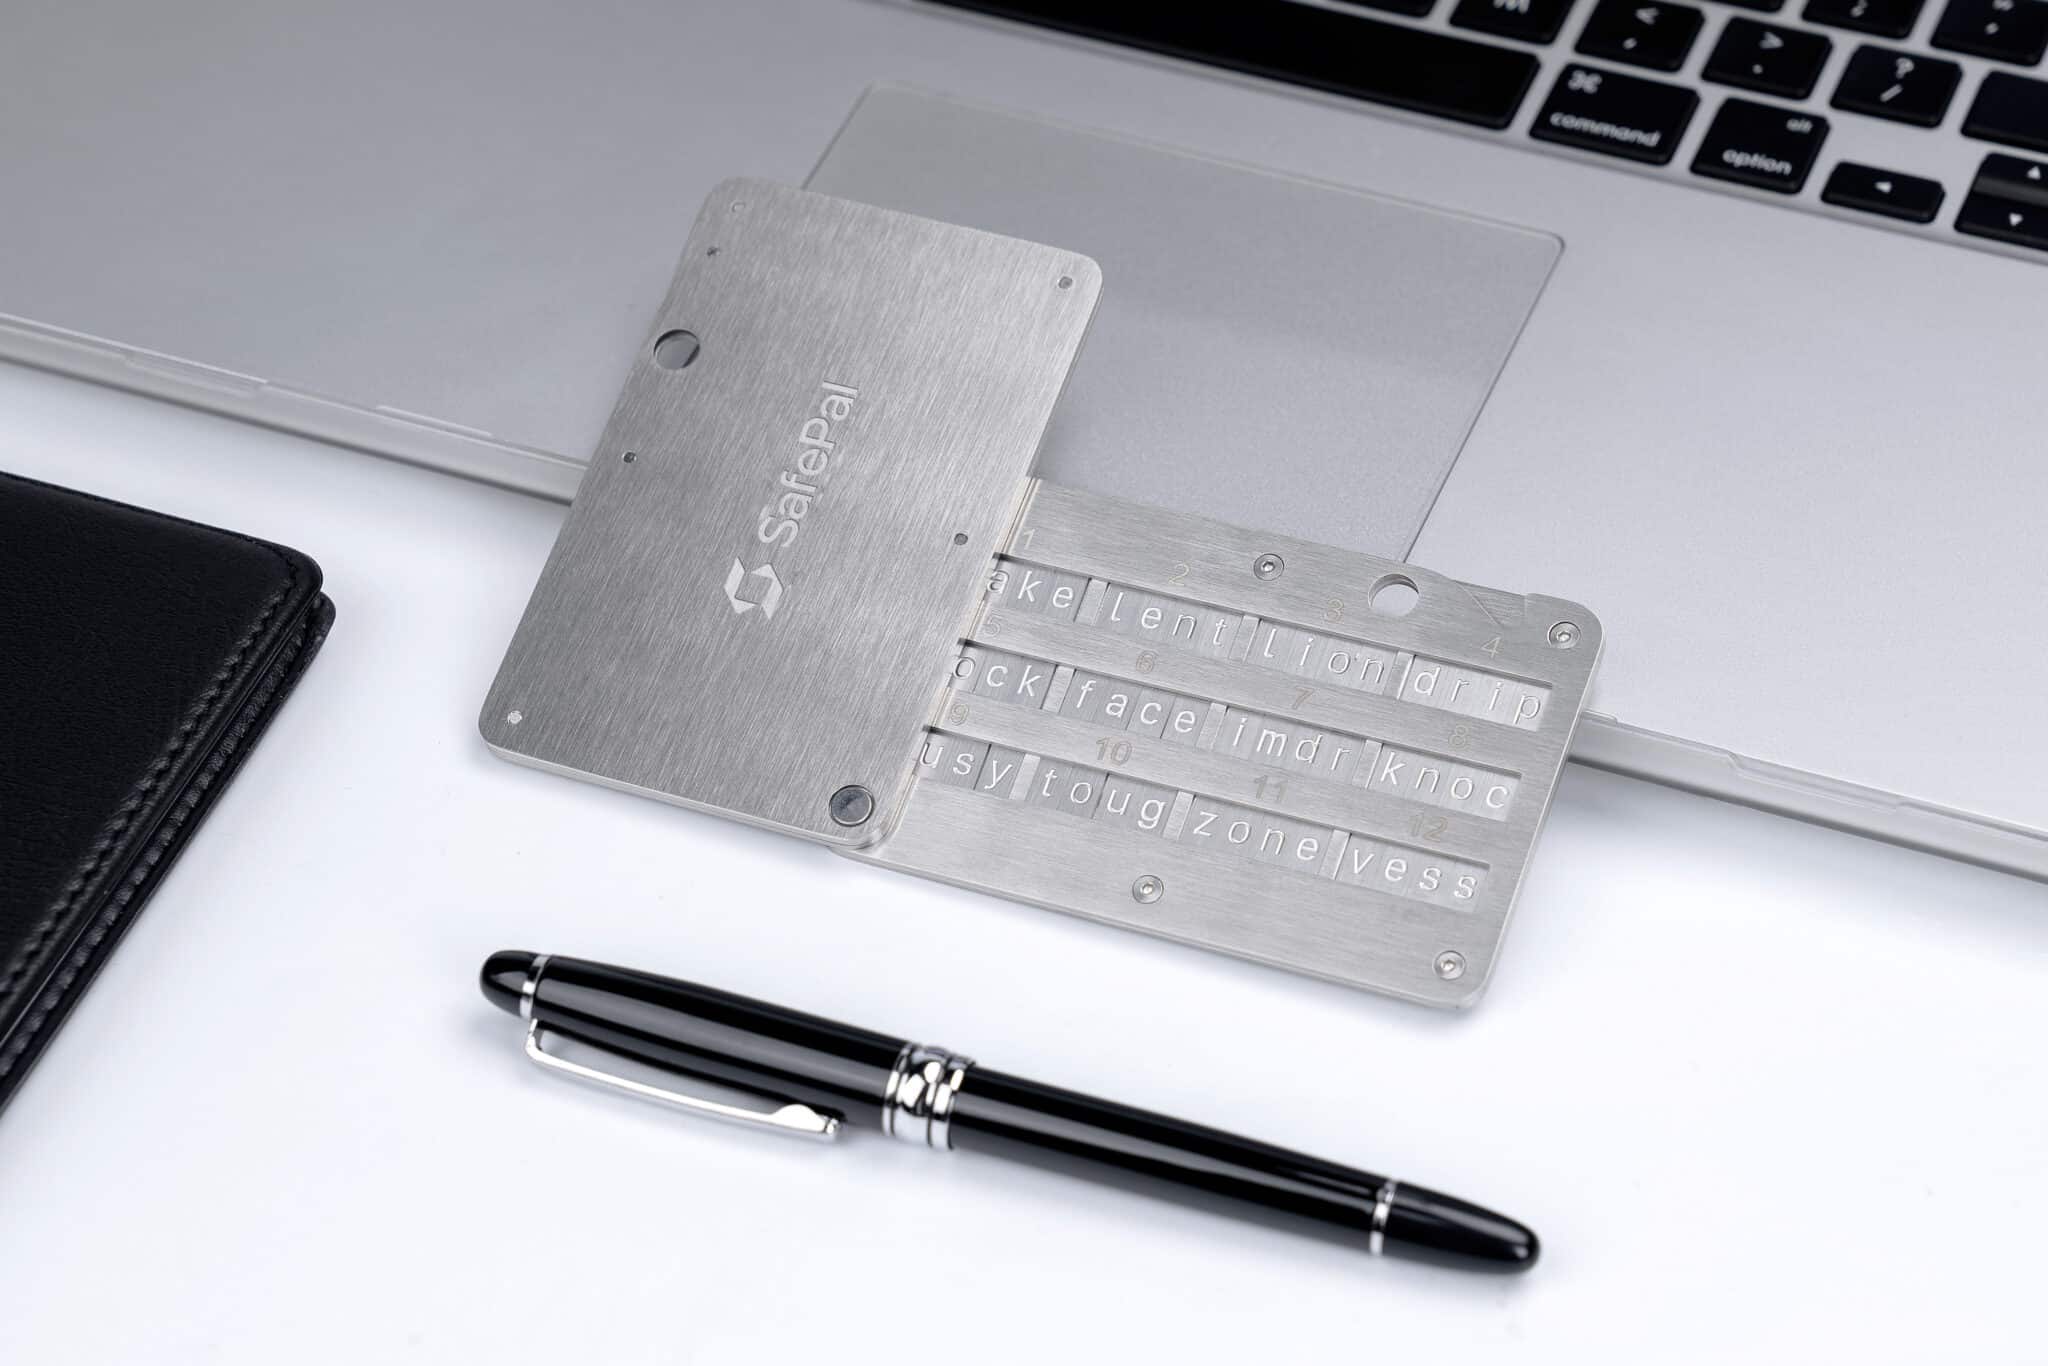 Metal wallet SafePal